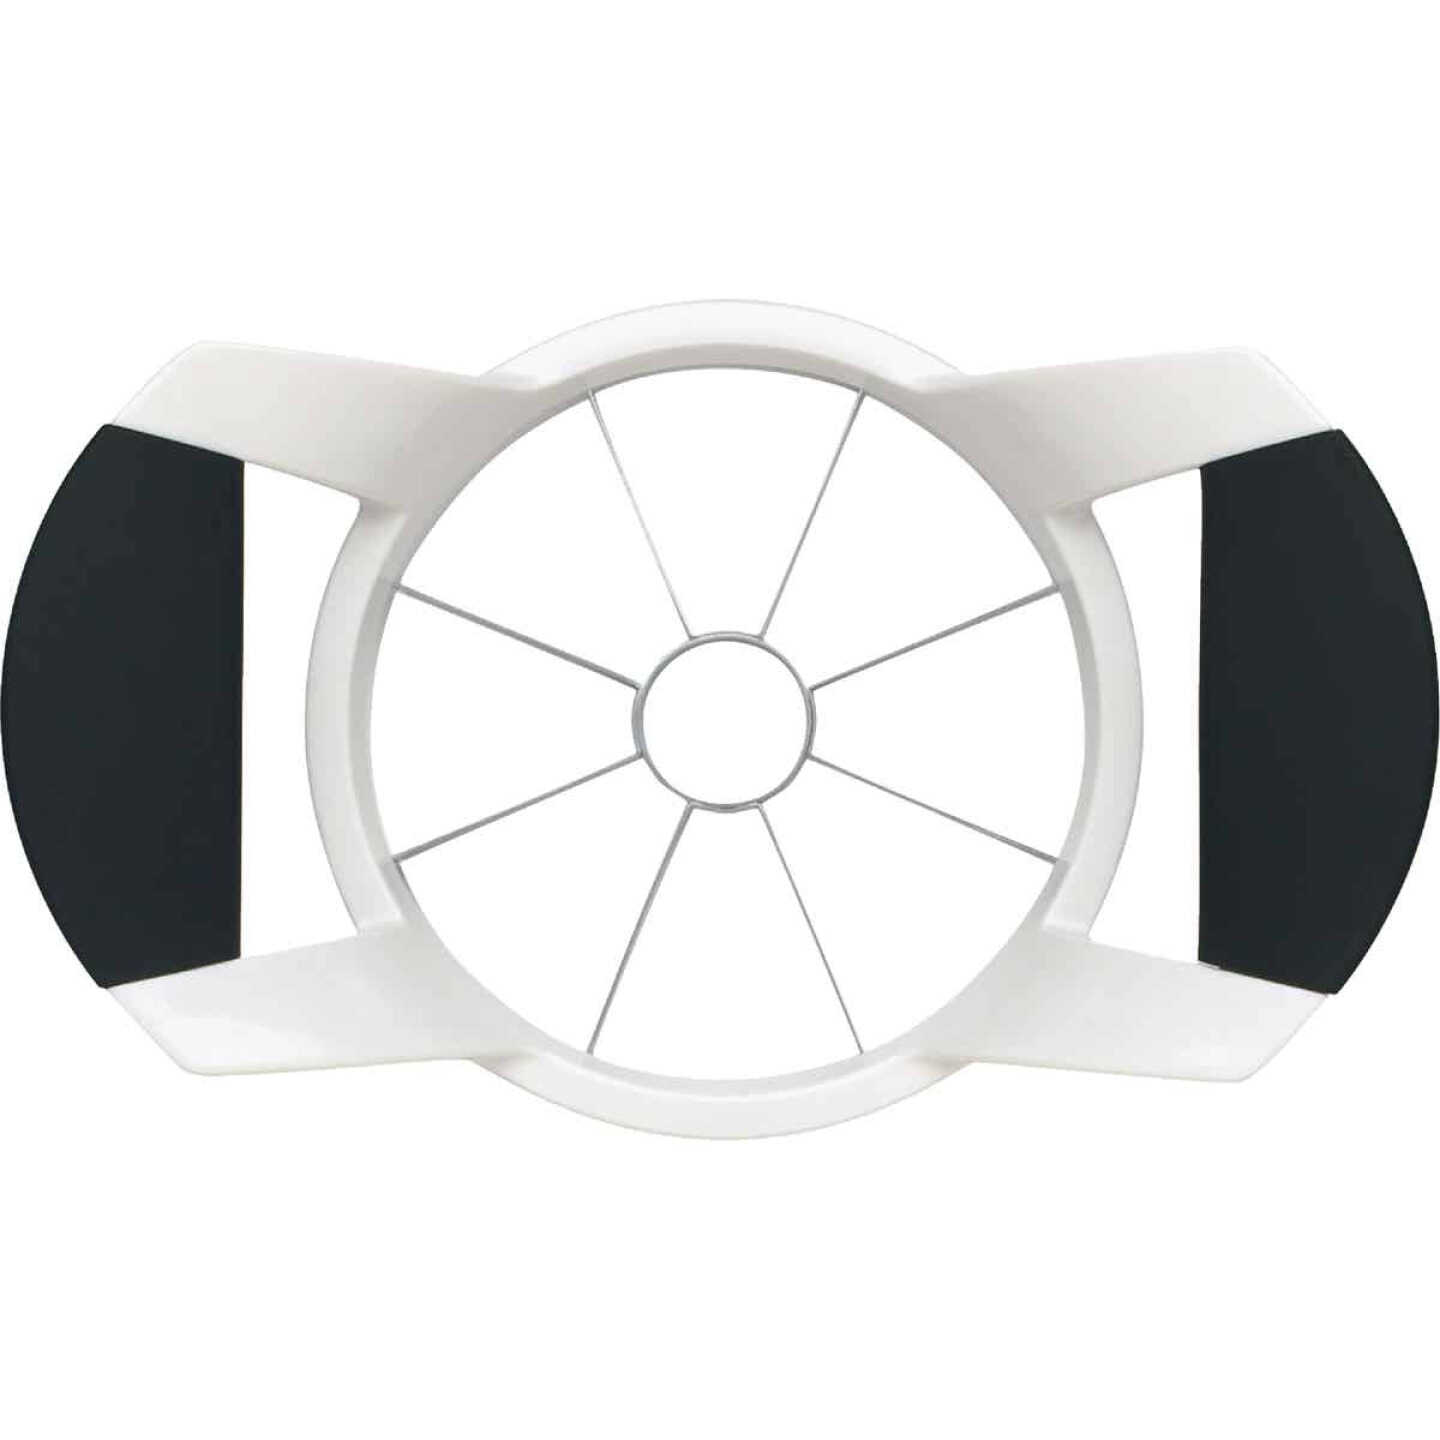 OXO Good Grips Apple Slicer, Corer and Divider,White